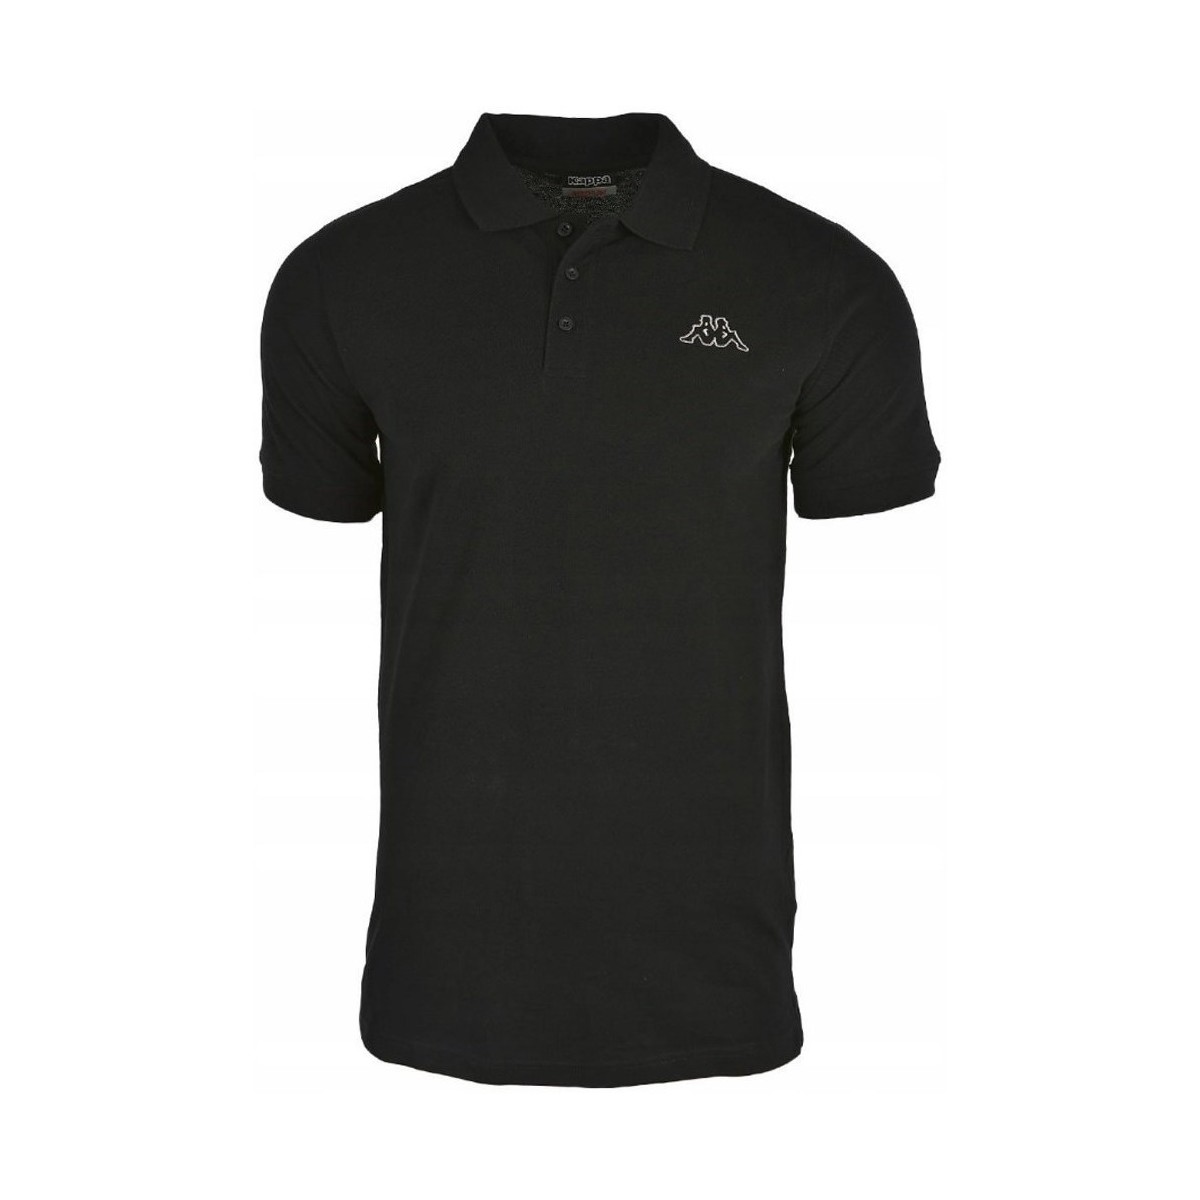 Textil Muži Trička s krátkým rukávem Kappa Peleot Polo Shirt Černá